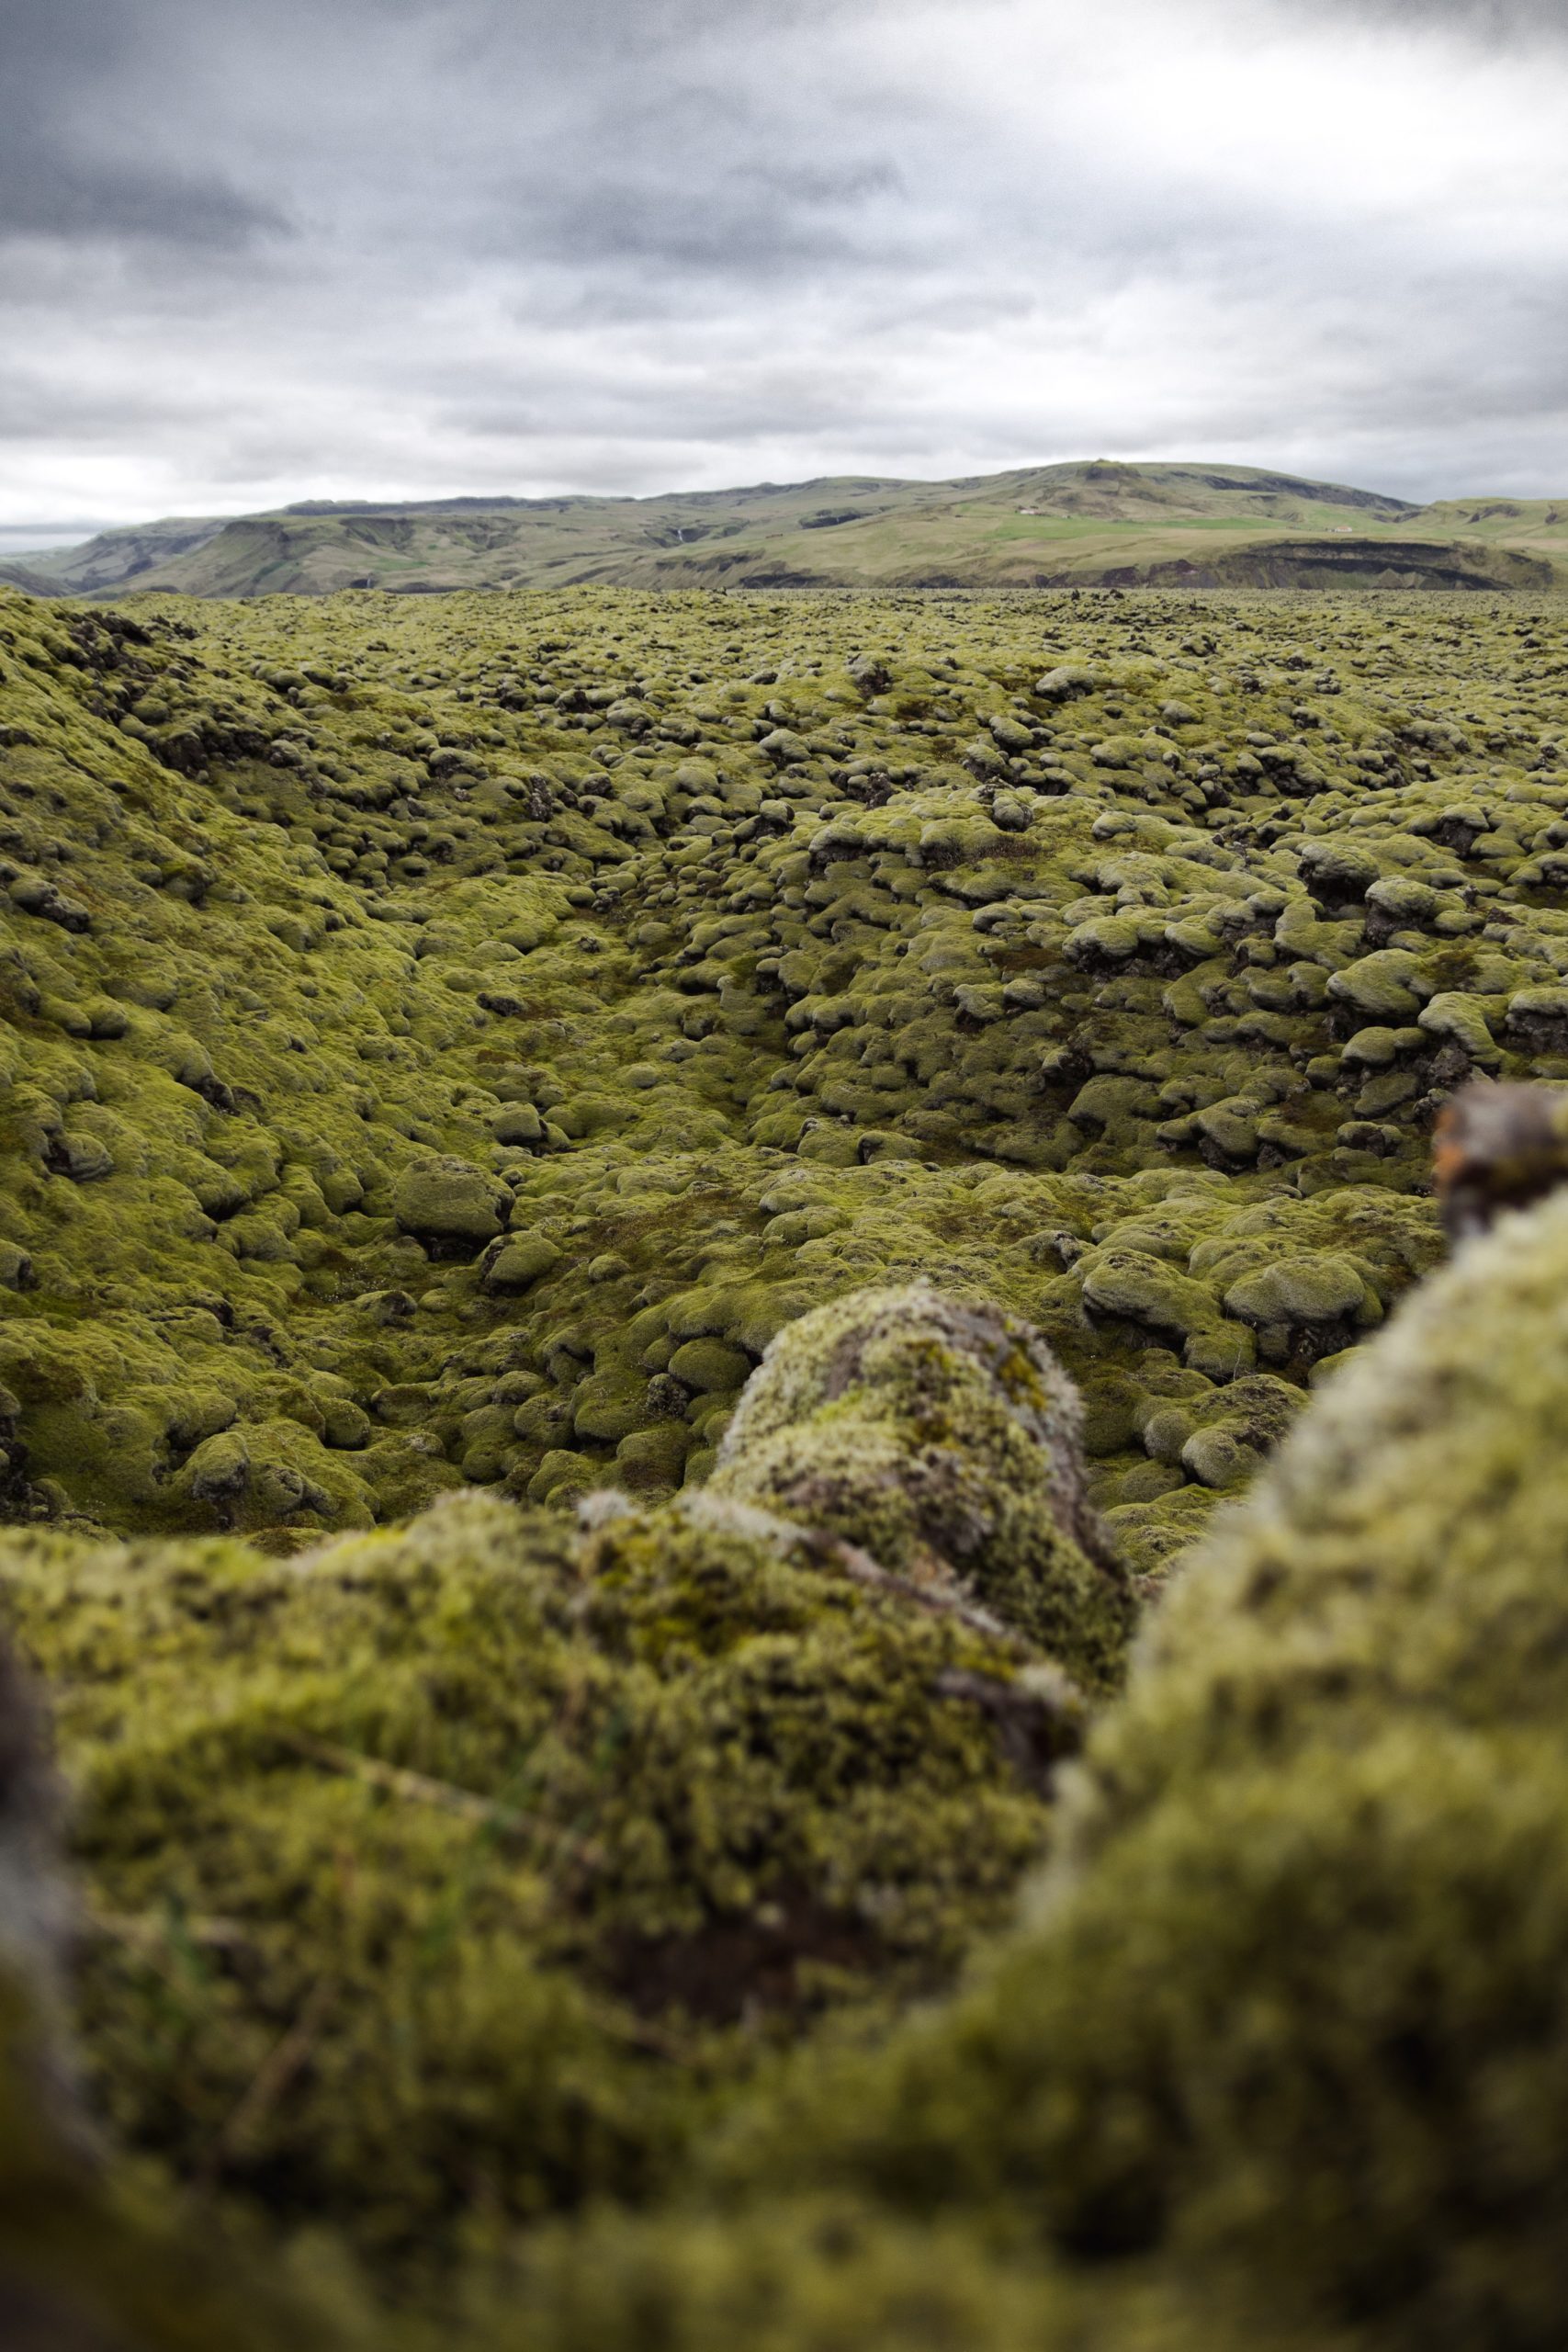 A portrait shot of an Icelandic landscape